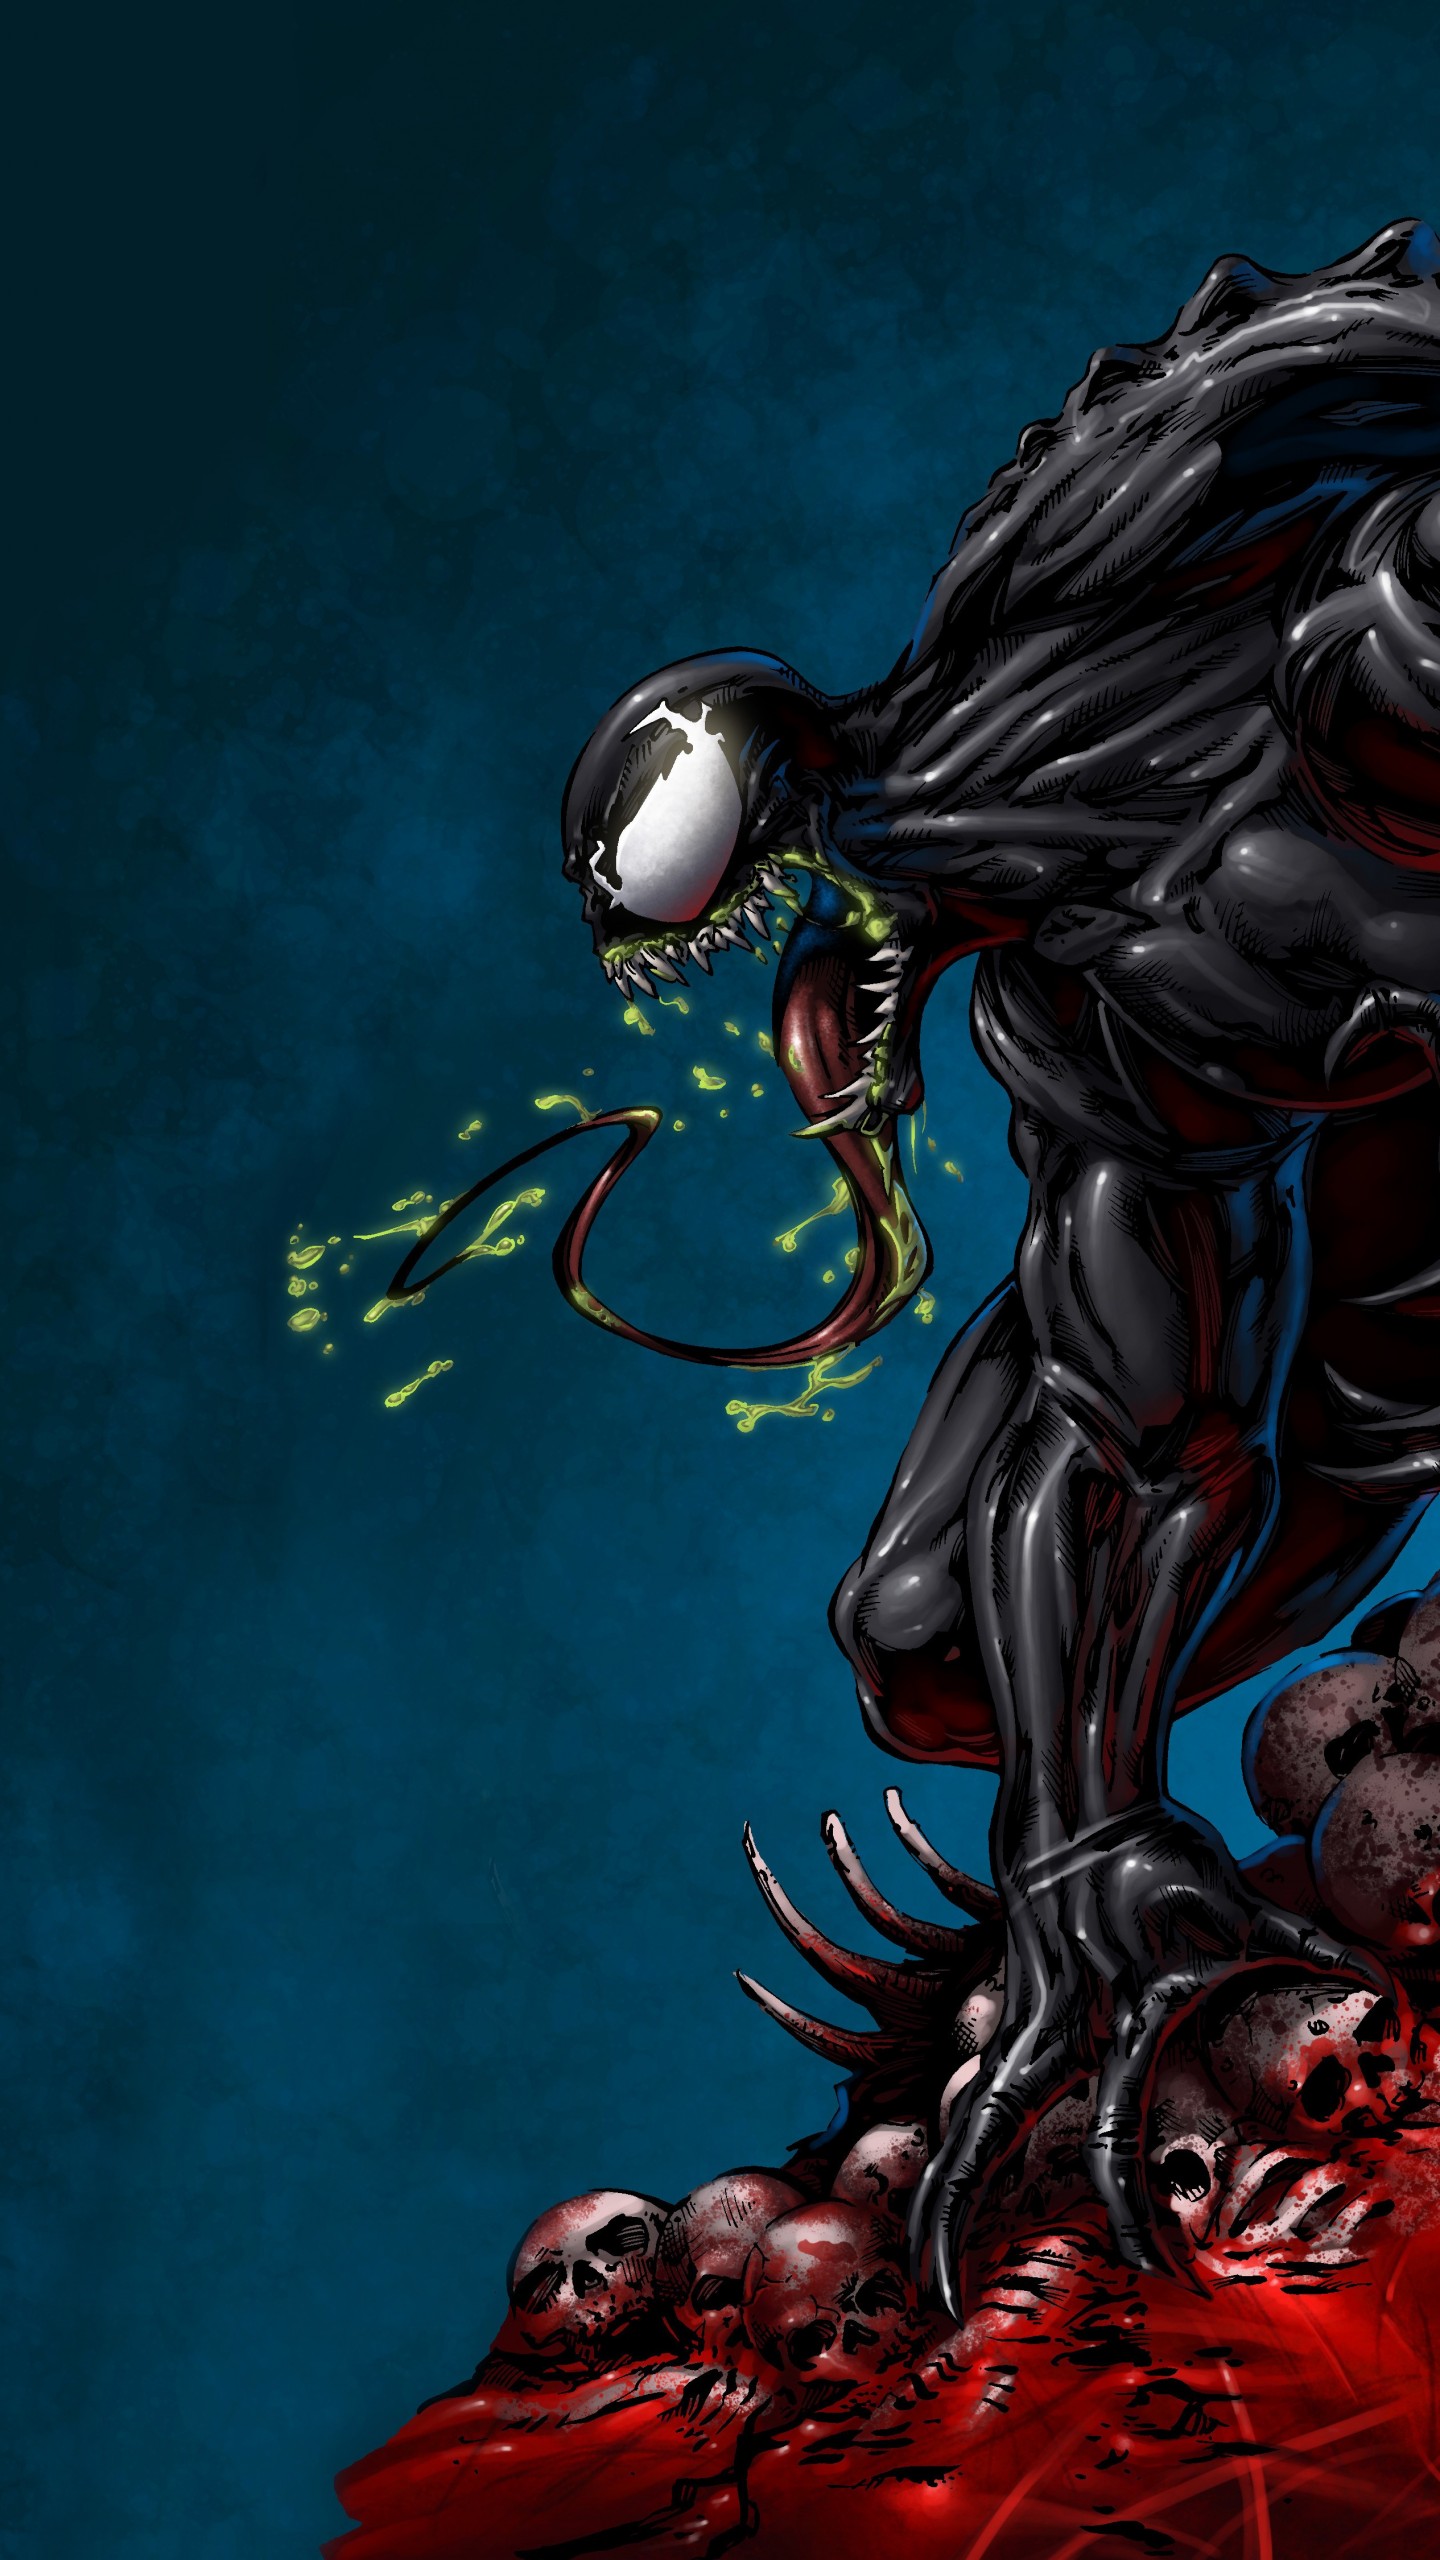 Marvel Venom Wallpaper Fictional Character Cg Artwork Illustration Venom Demon Wallpaperuse